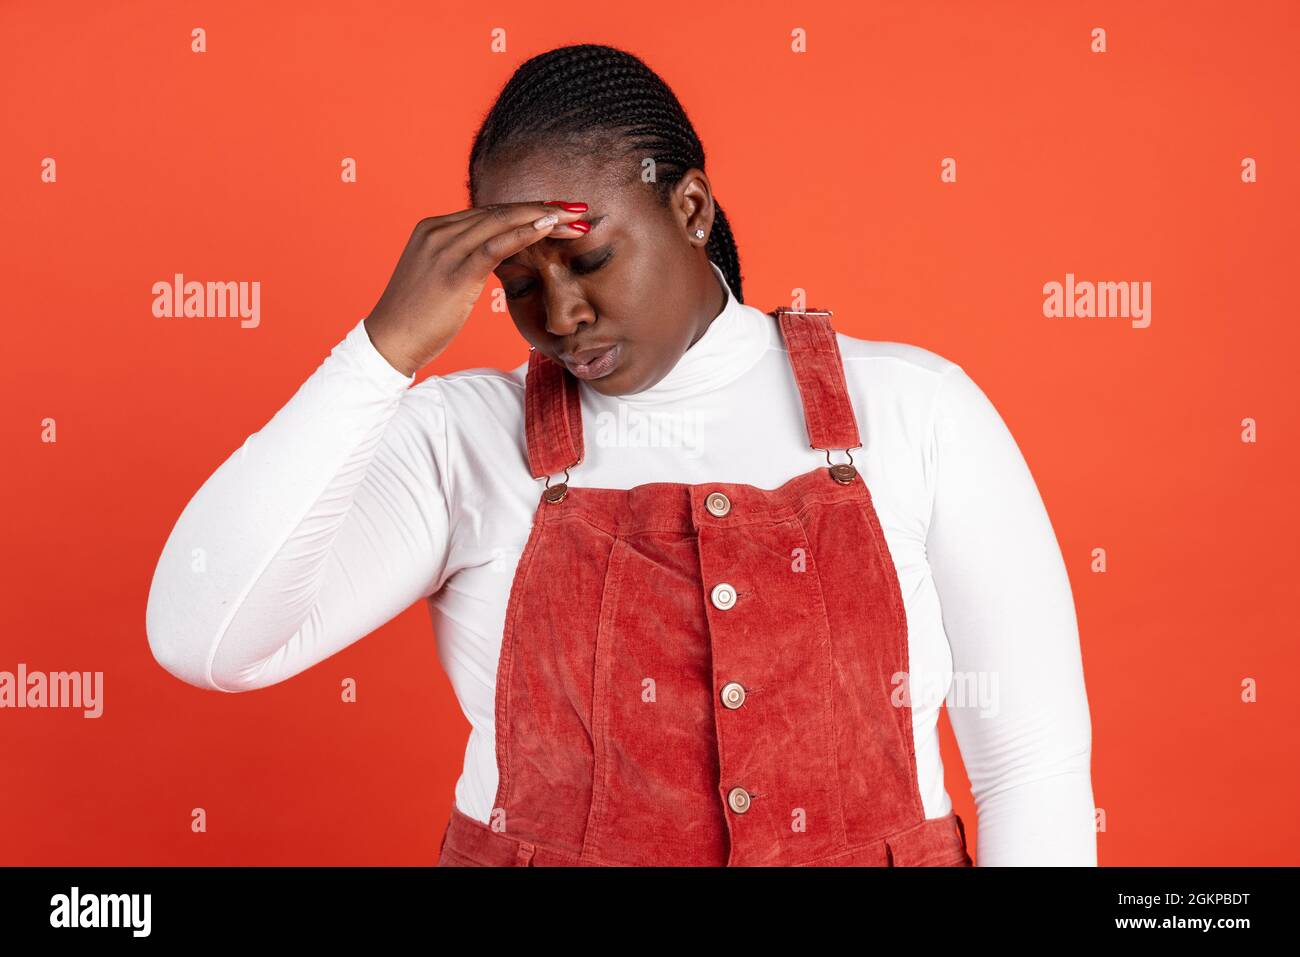 Ritratto luminoso di donna triste africana isolato su sfondo rosso studio. Concetto di emozioni umane, espressione facciale, bellezza naturale, bodypositive Foto Stock